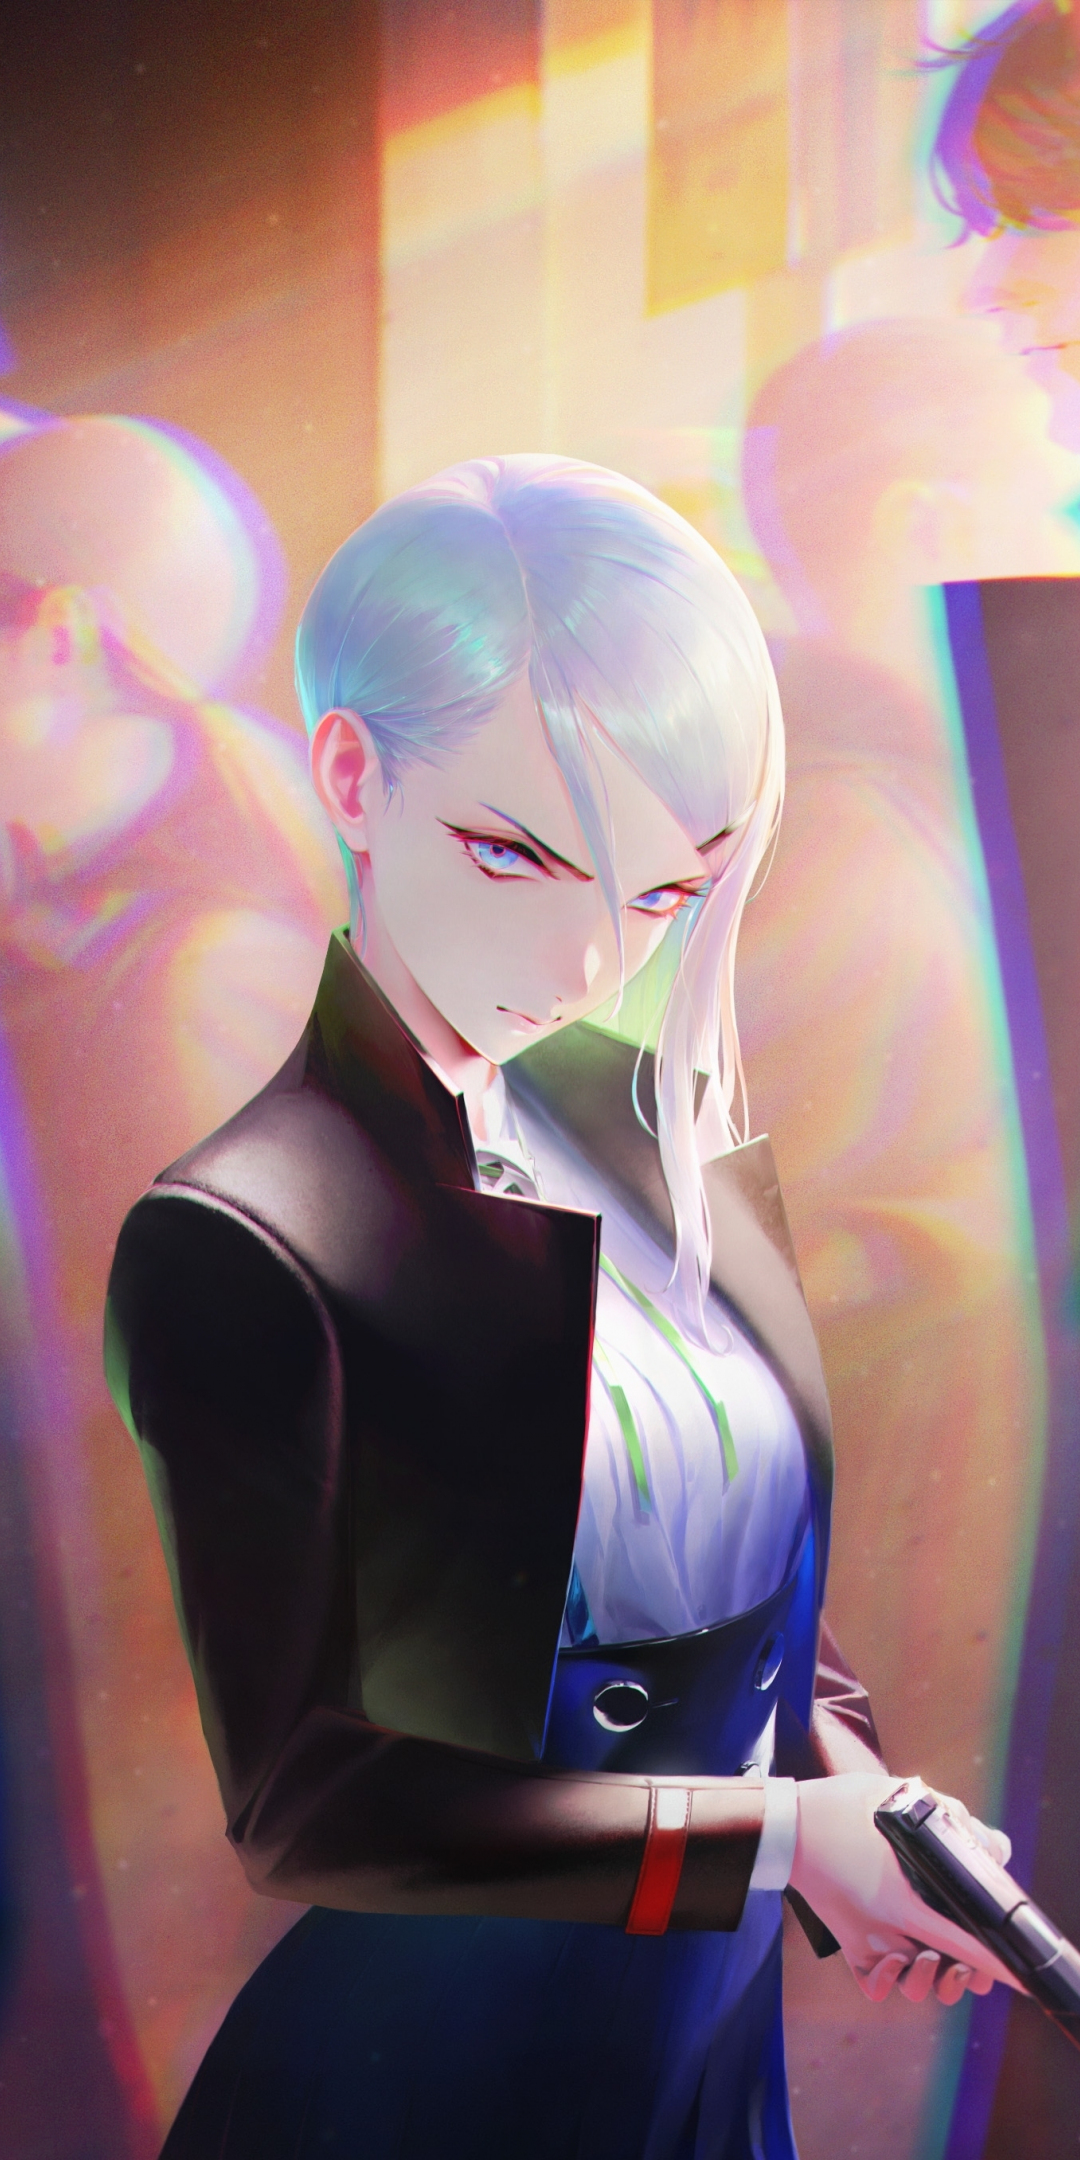 White hair anime girl, original, killer, 1080x2160 wallpaper